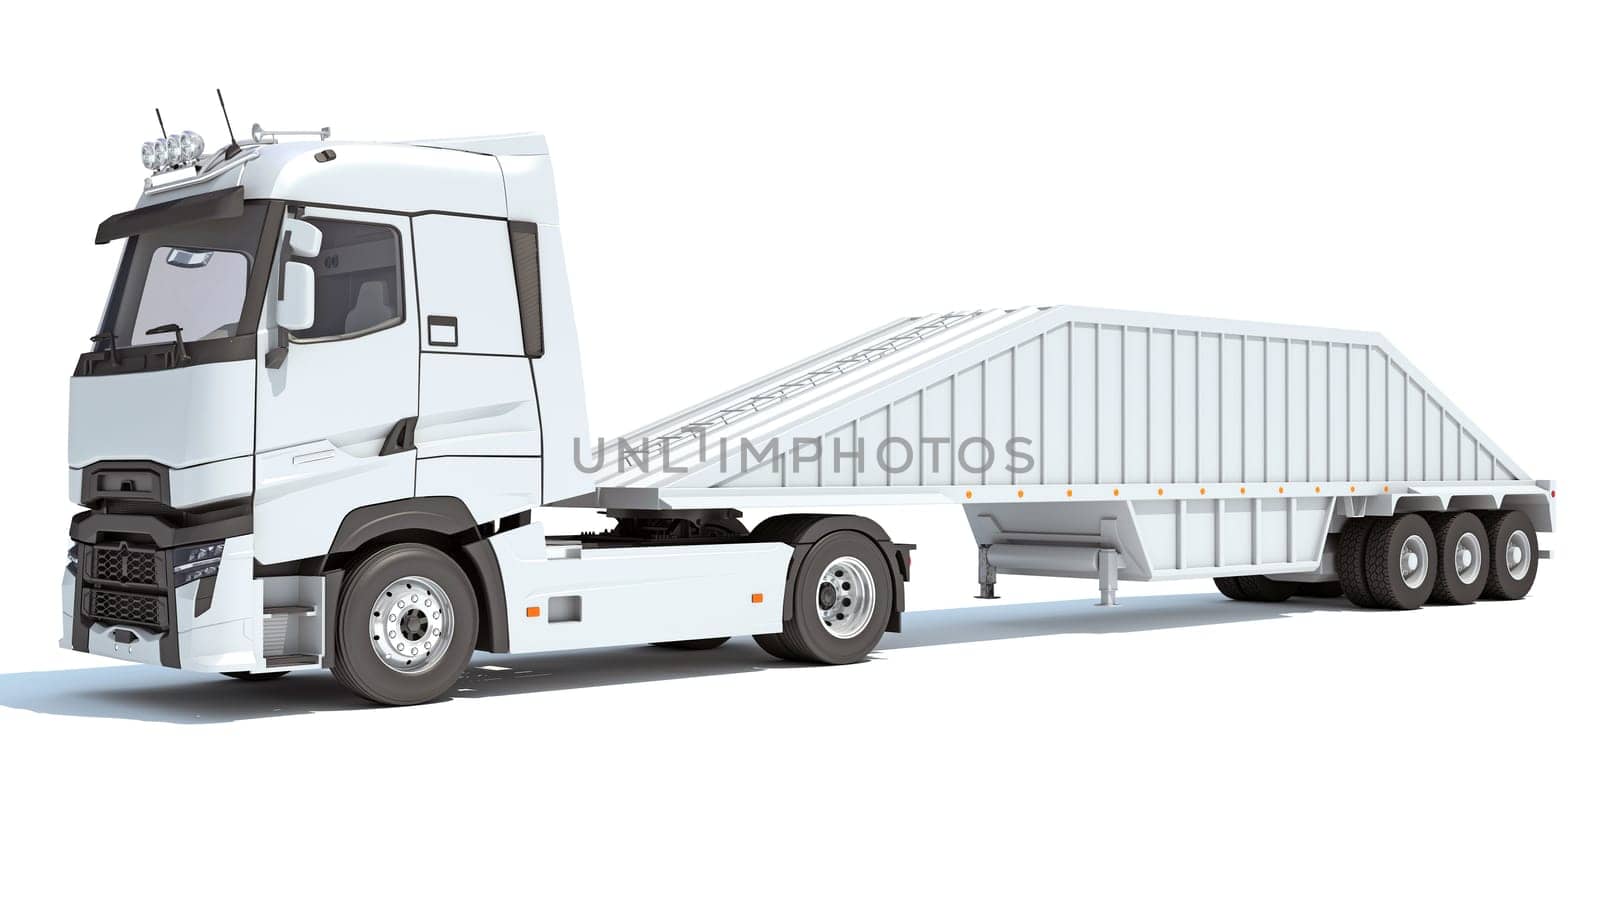 Truck with Bottom Dump Trailer 3D rendering model